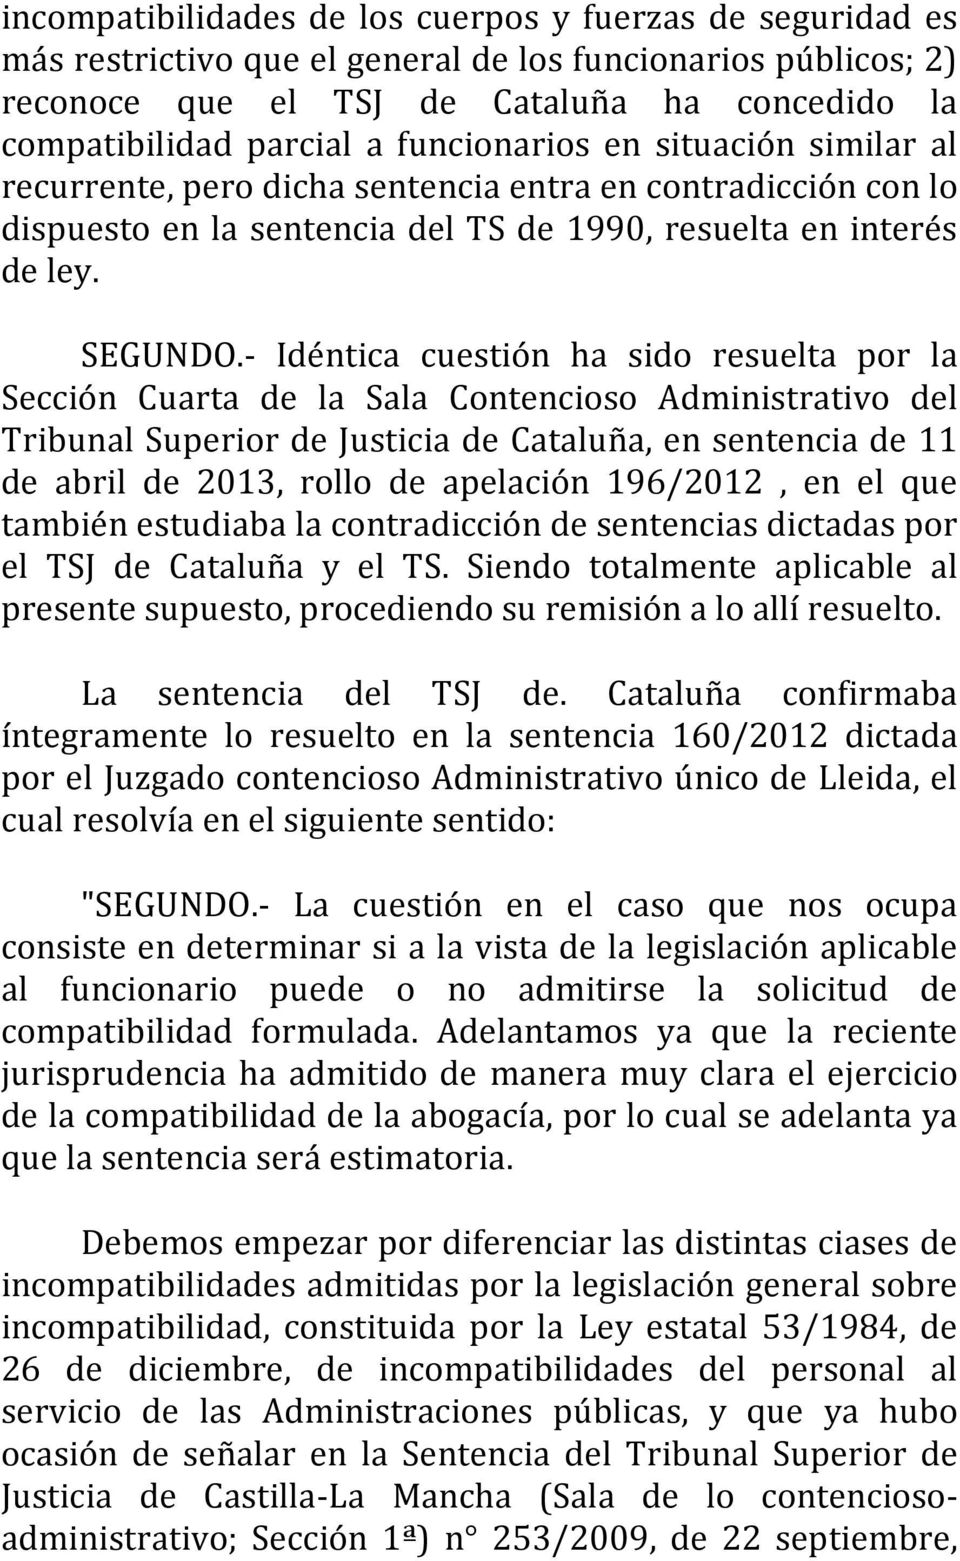 - Idéntica cuestión ha sido resuelta por la Sección Cuarta de la Sala Contencioso Administrativo del Tribunal Superior de Justicia de Cataluña, en sentencia de 11 de abril de 2013, rollo de apelación